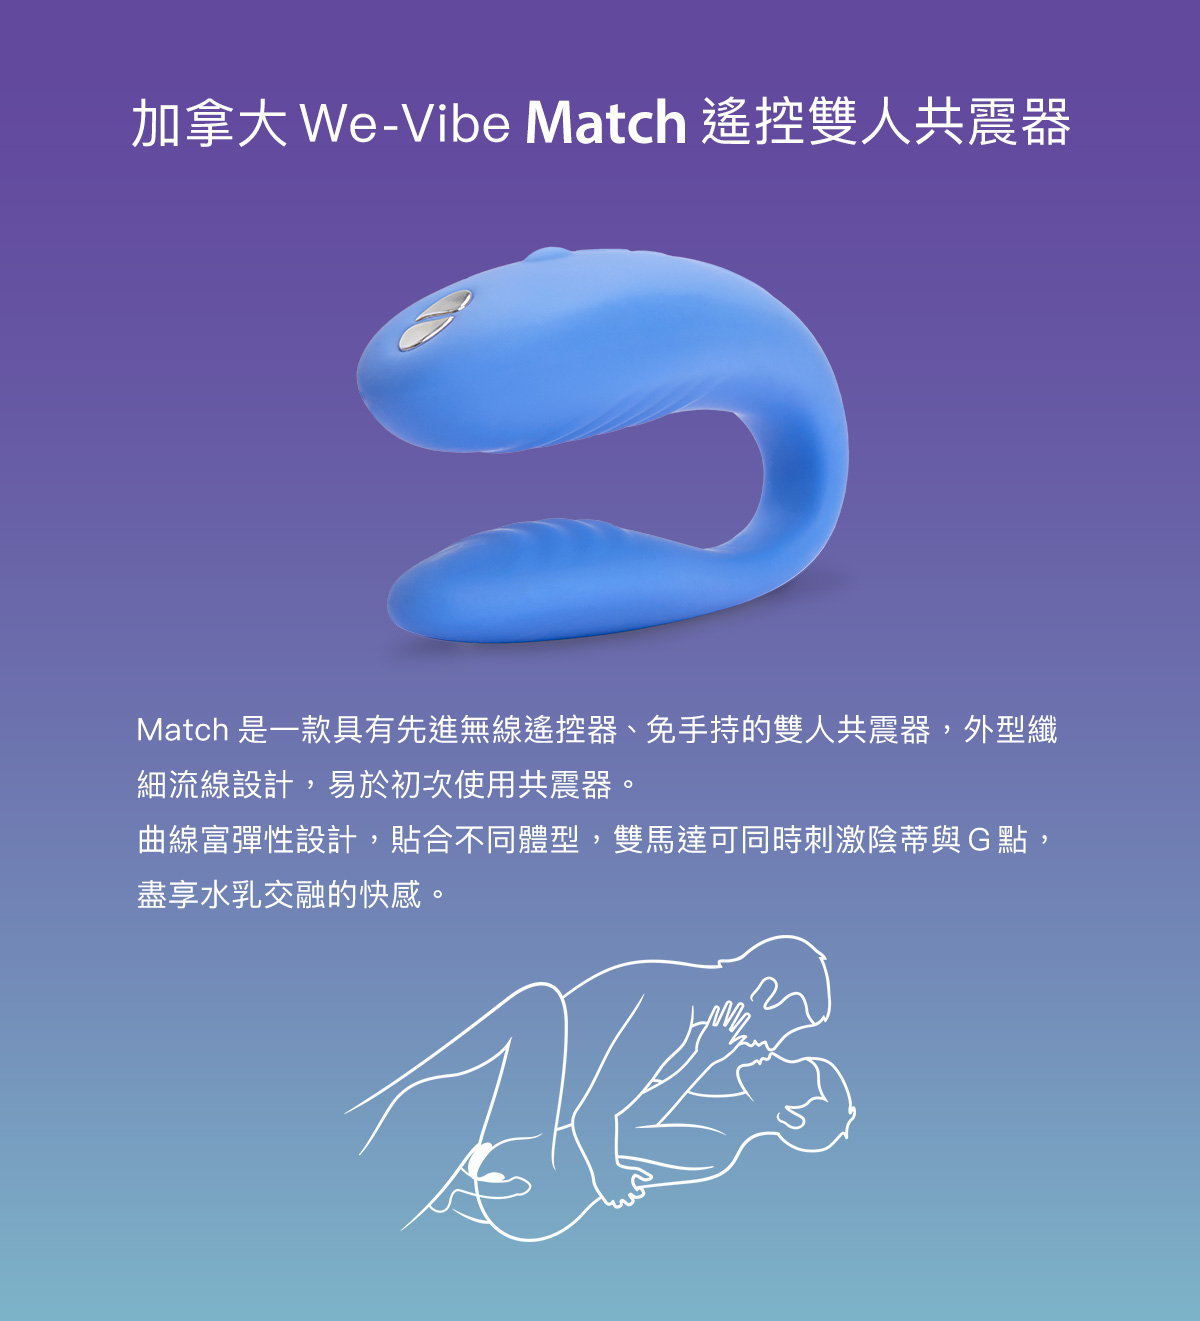 We-Vibe_Match_04.jpg